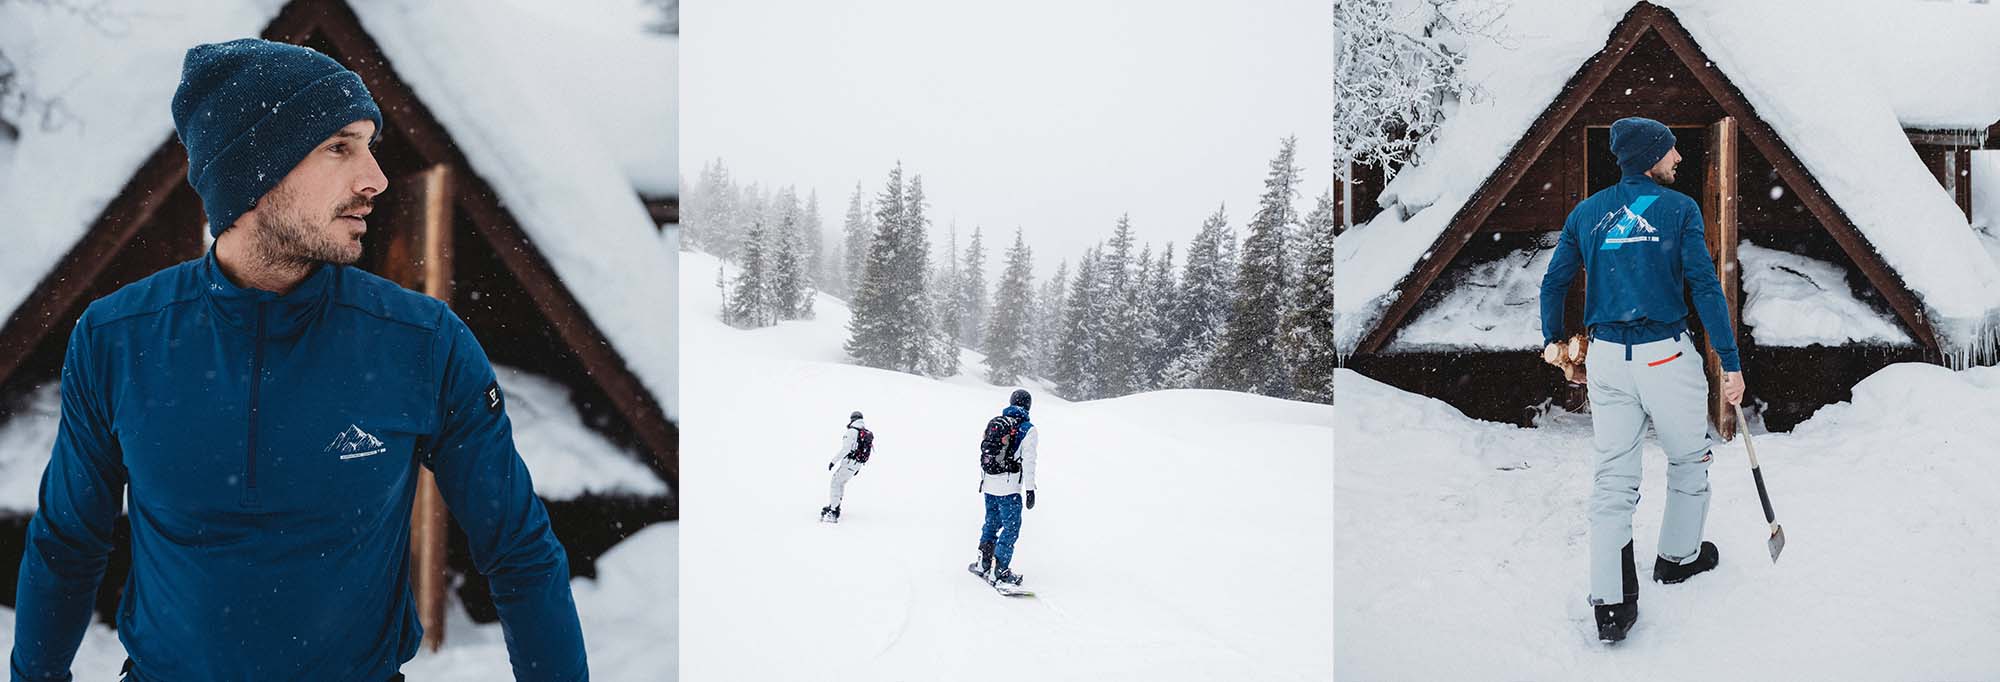 Lekker in de sneeuw betekent lekker warme kleding. Youri Zoon draagt na het skiën een zachte fleece van Brunotti.